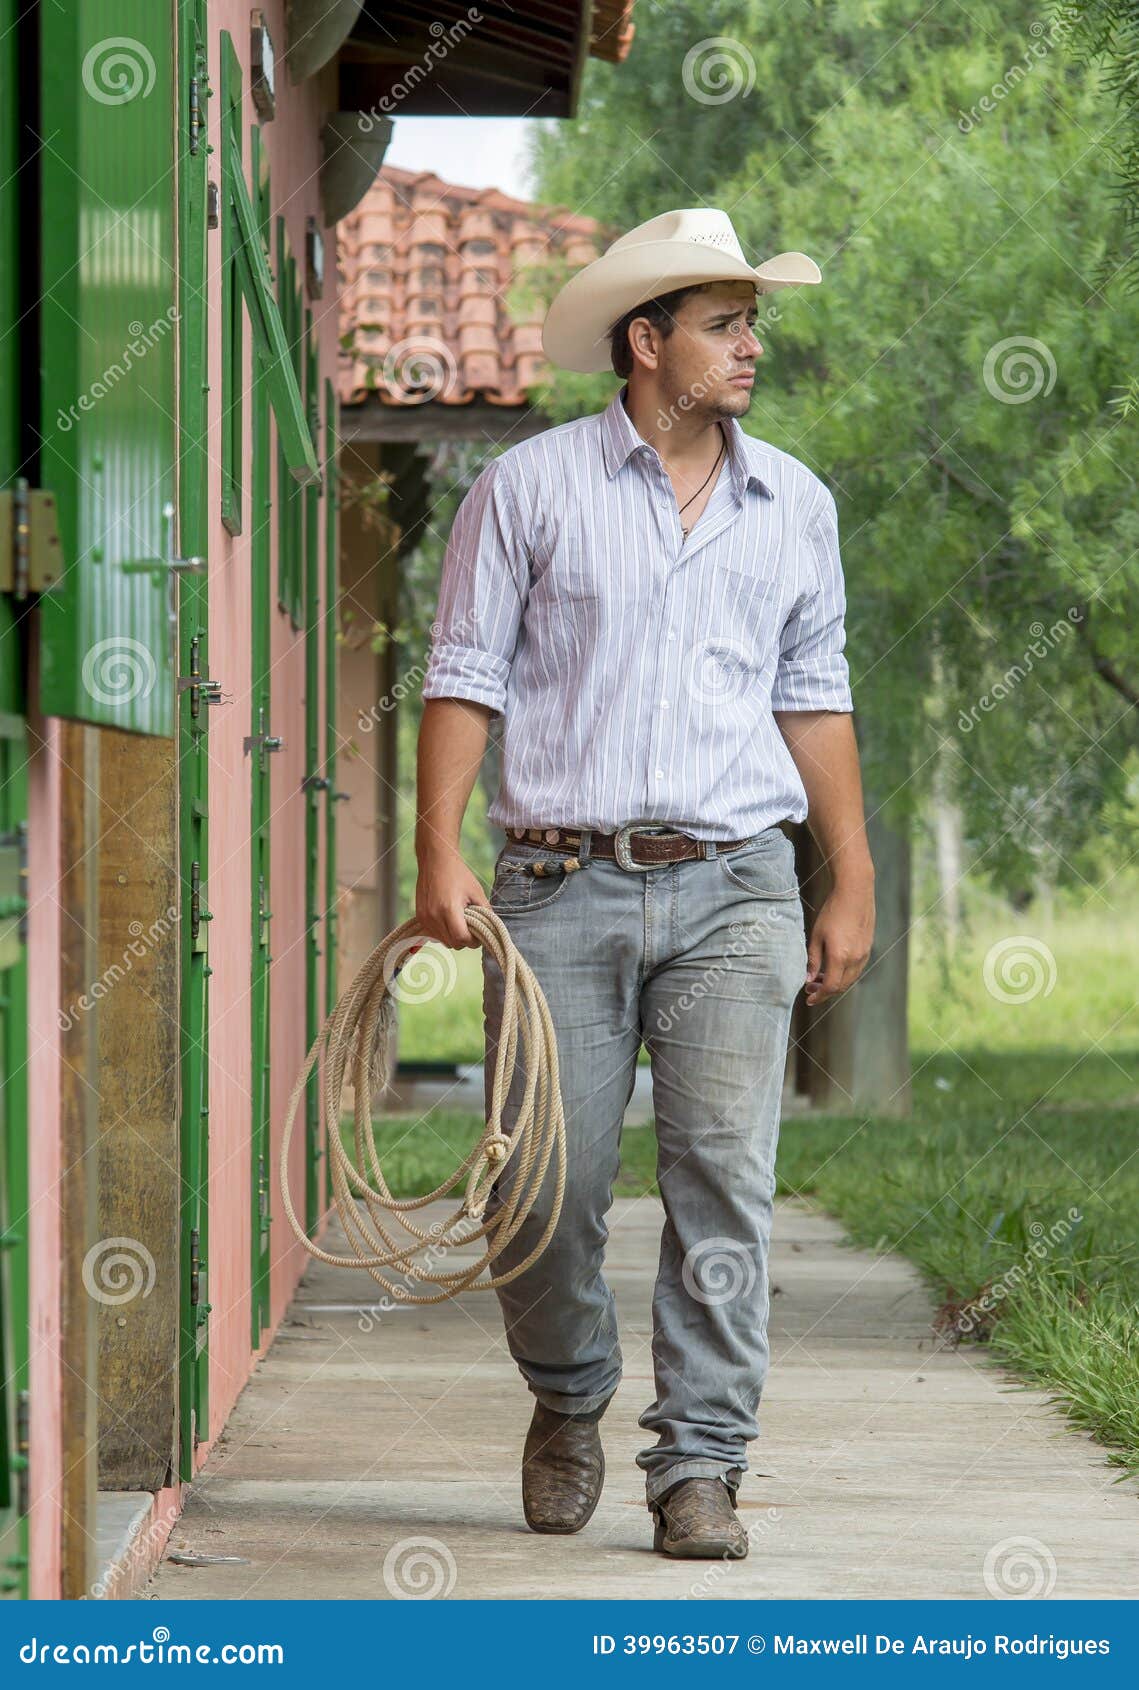 cowboy walking